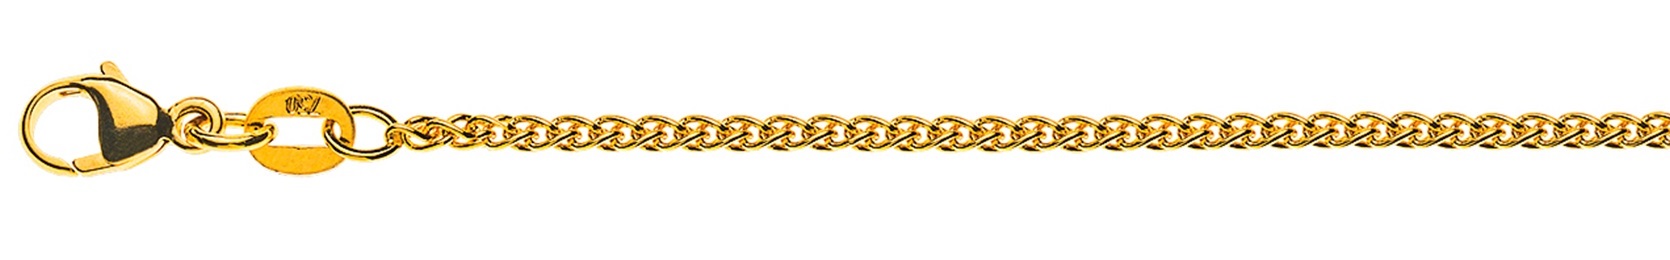 AURONOS Élégance Halskette Gelbgold 14K Zopfkette 55cm 1.6mm